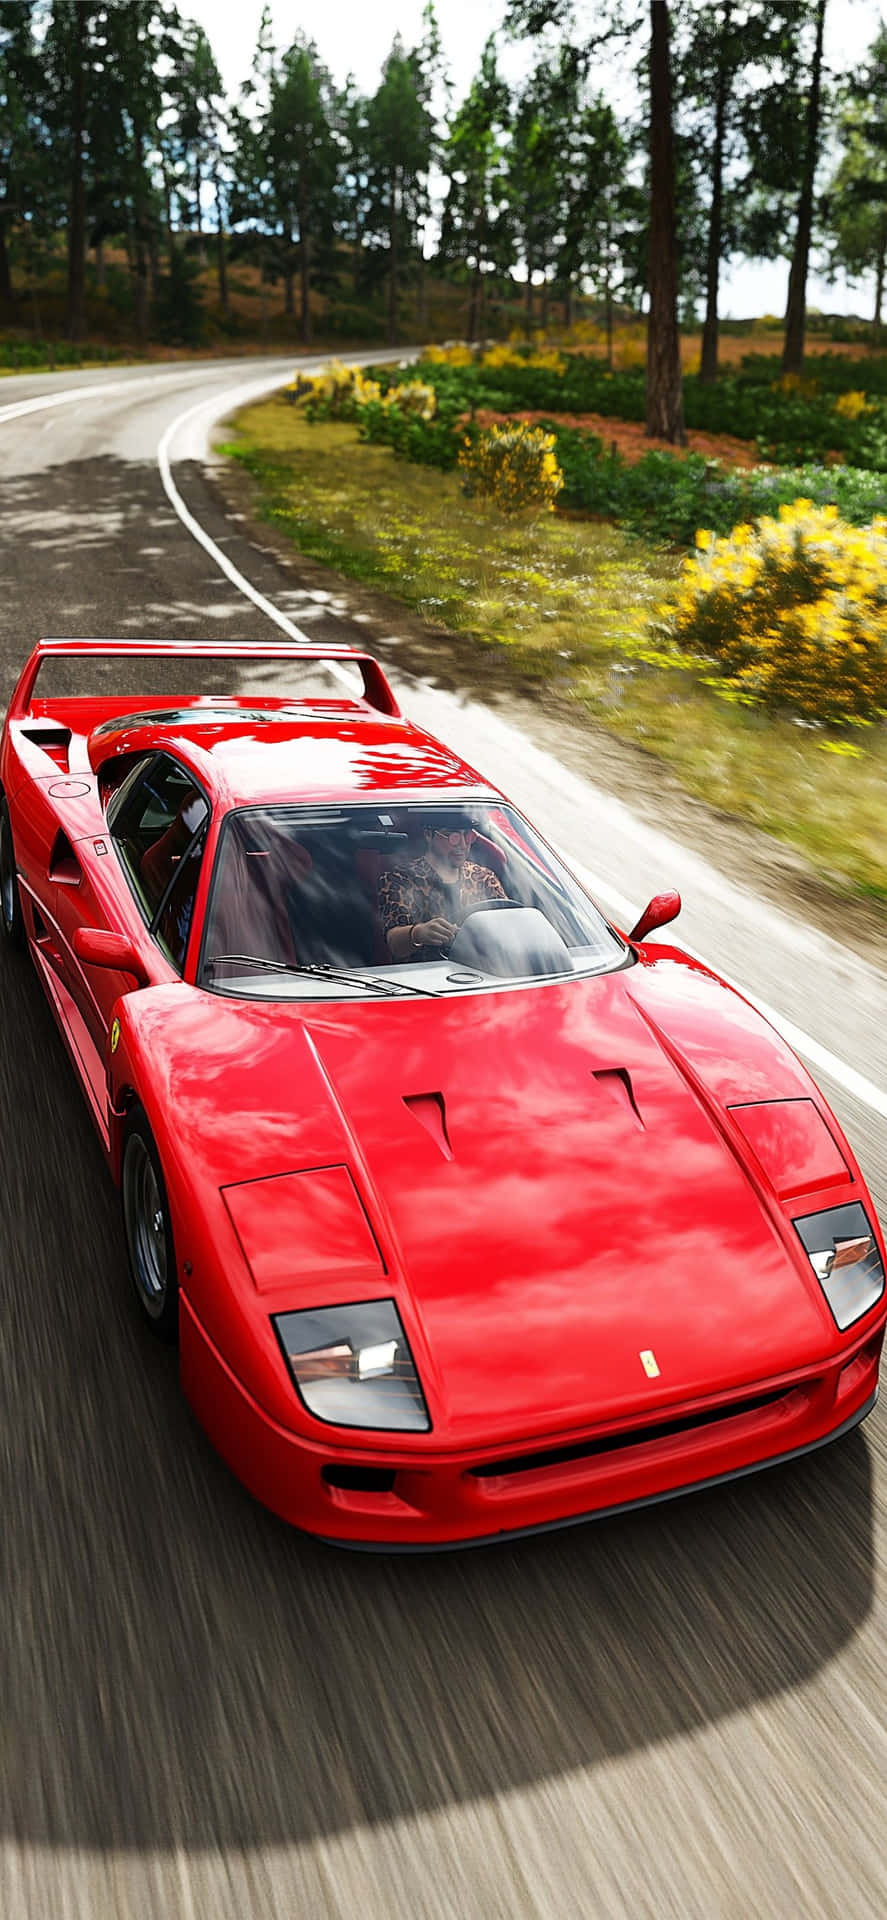 Kraften og elegance af en vintage Ferrari Wallpaper